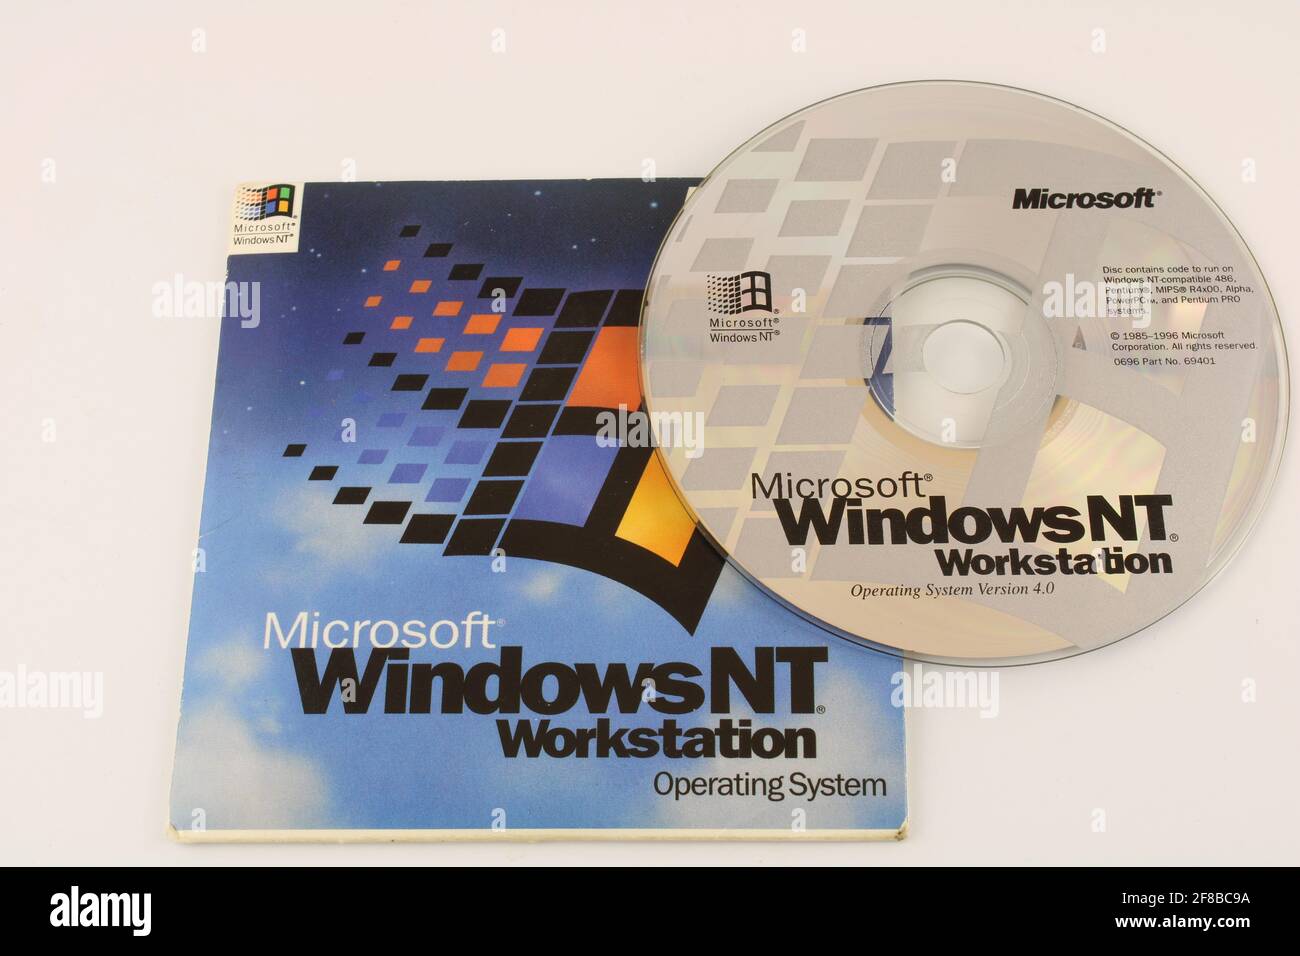 Logiciel Windows NT pour ordinateurs serveur. Vieux concept de technologie Banque D'Images